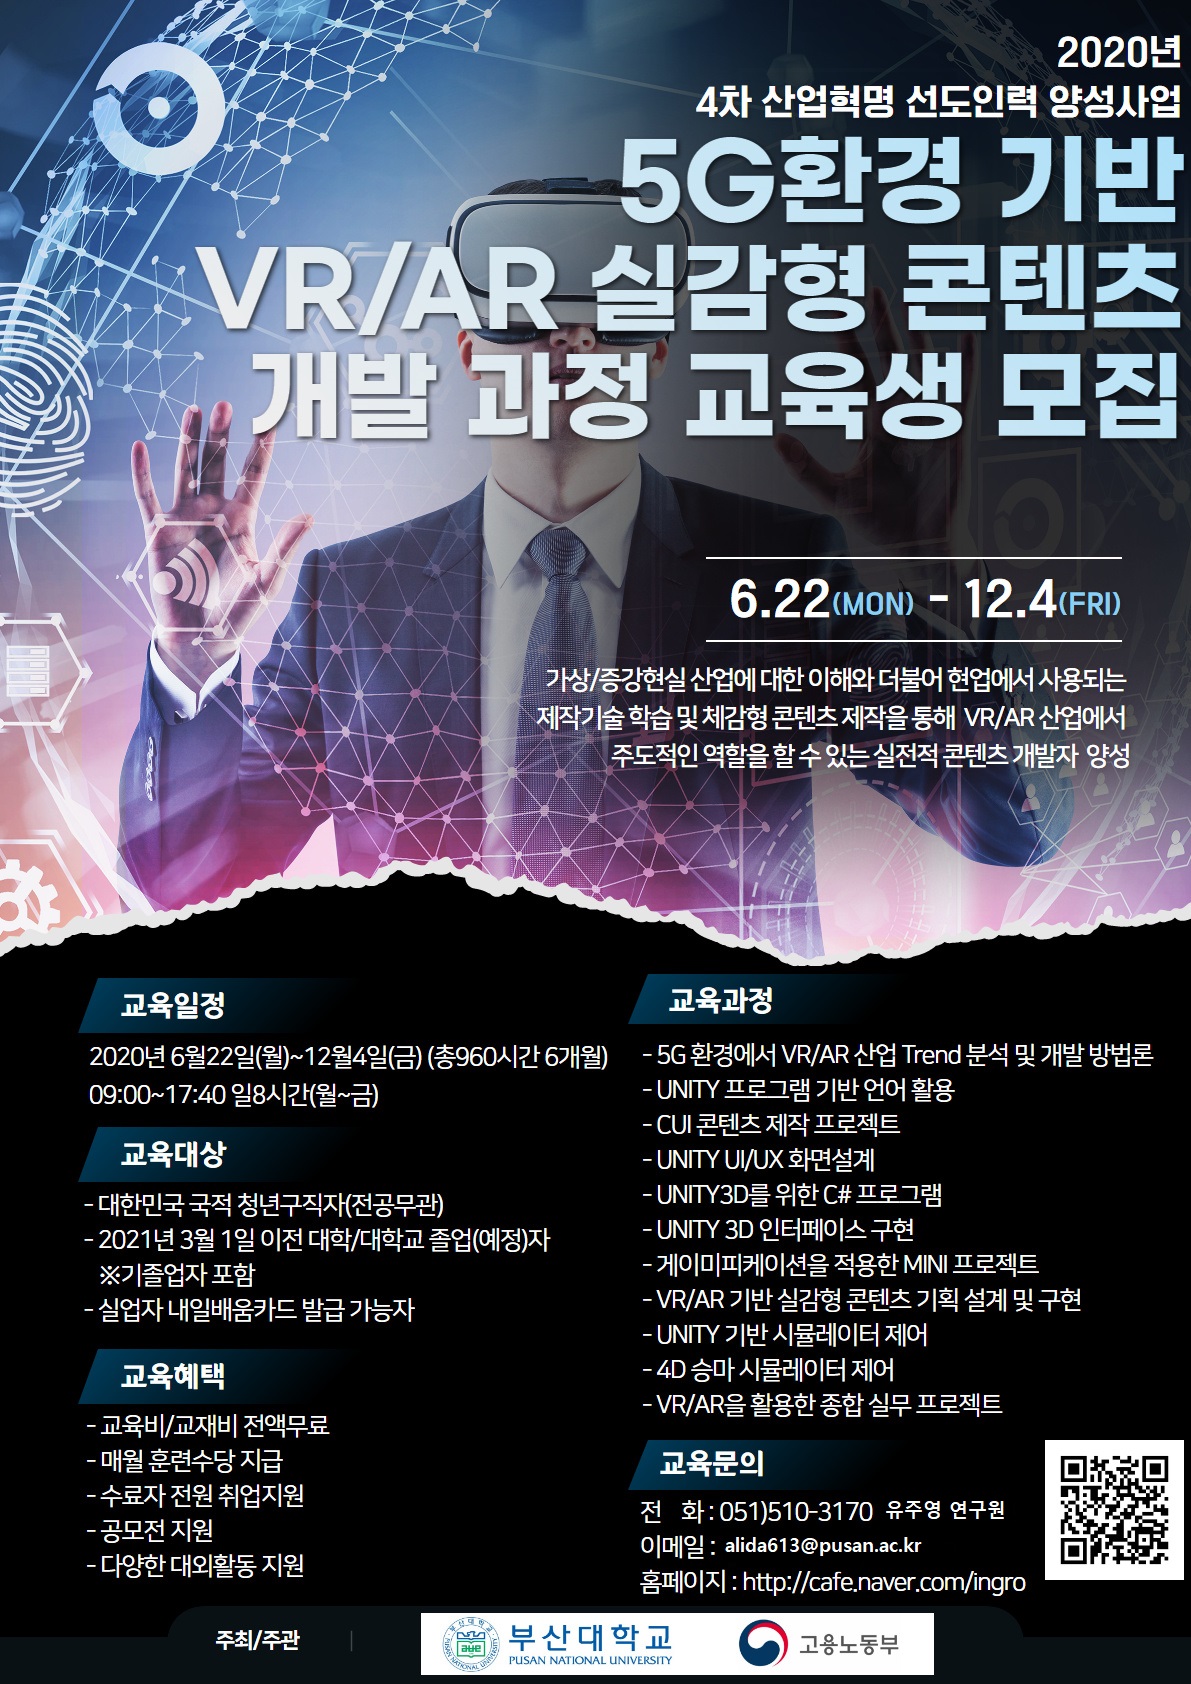 5G 포스터 !.jpg : 2020년 4차 산업혁명 선도인력 양성 5G 환경 기반 VR/AR 실감형 콘텐츠 개발 과정 교육생 모집